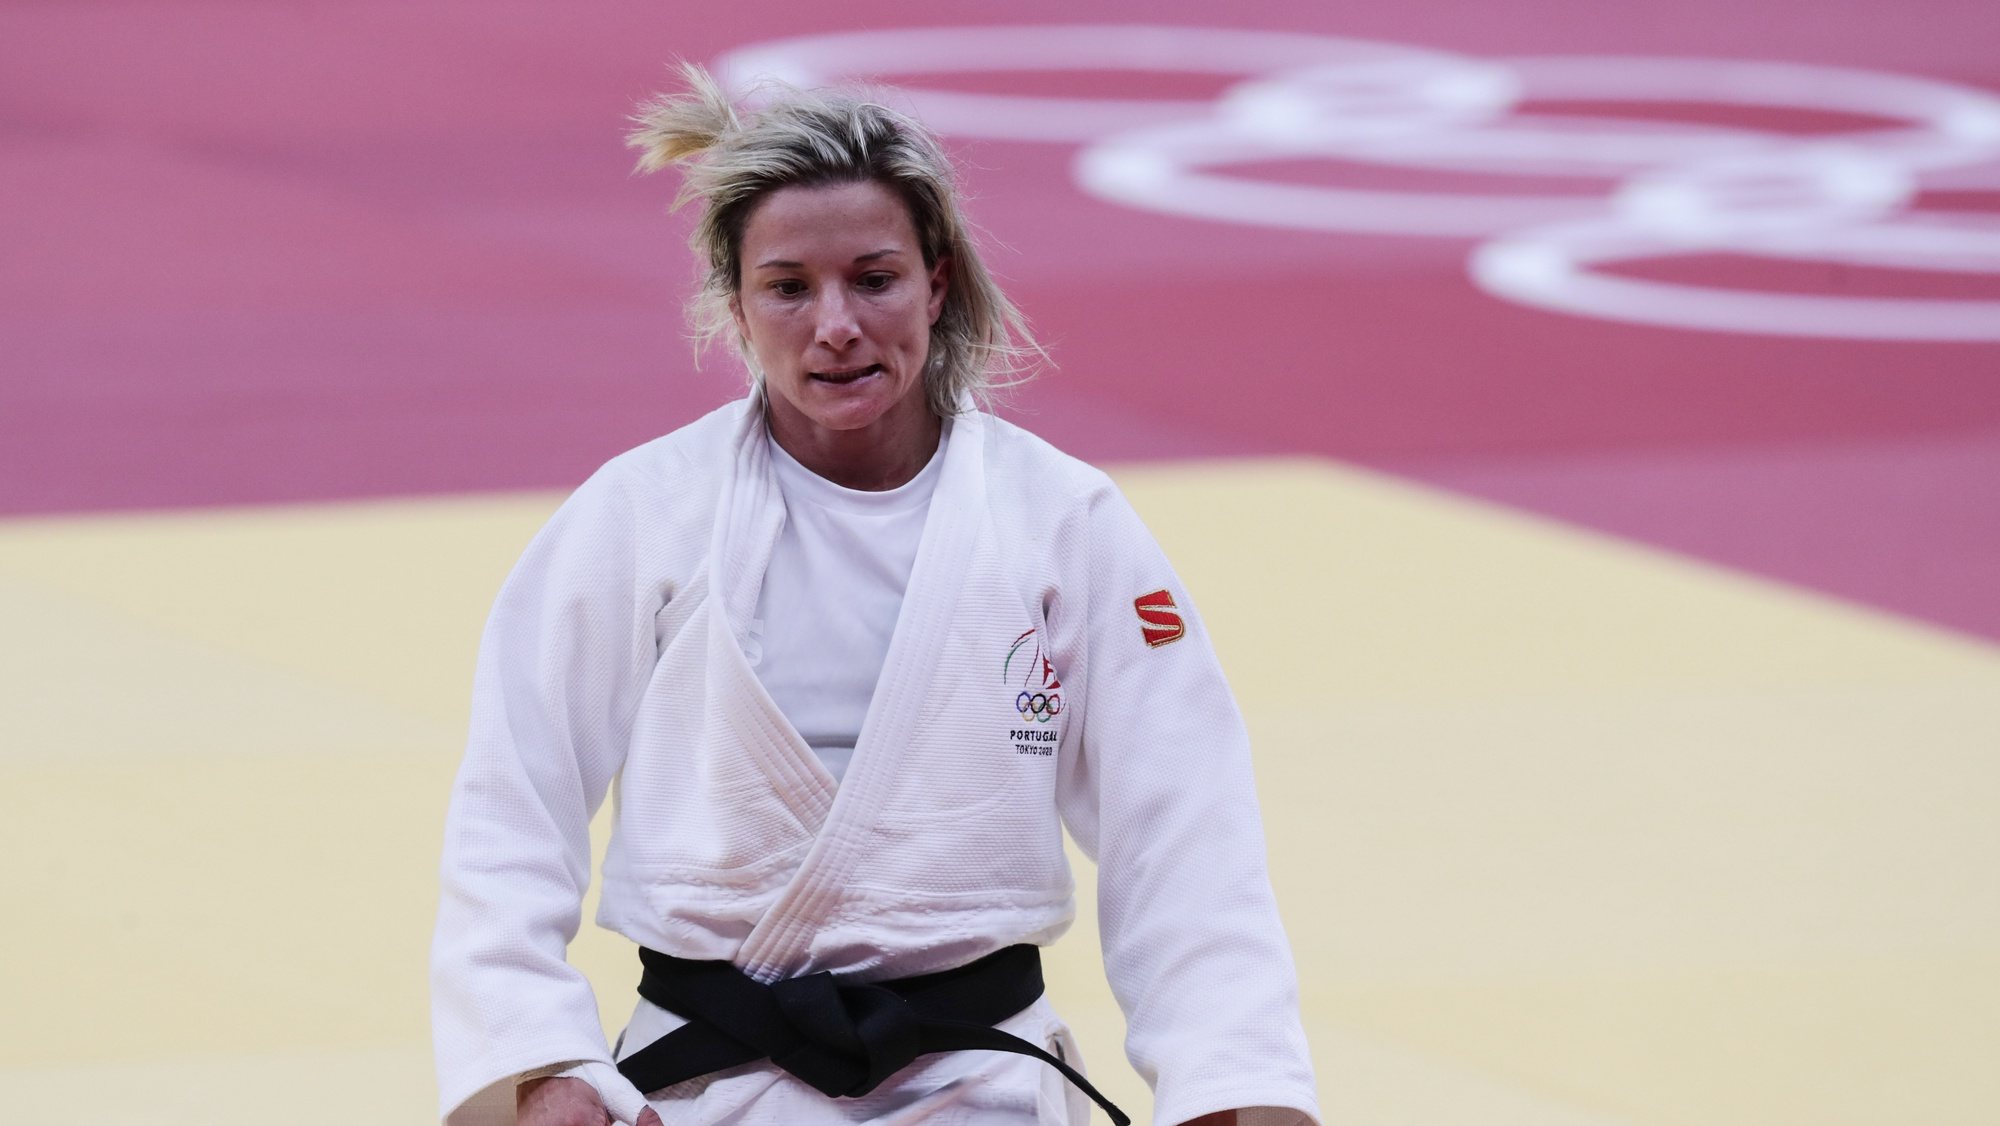 A judoca portuguesa Telma Monteiro foi derrotada pela judoca polaca Julia Kowalczyk, depois de mais de 5 minutos no golden score e falhou os quartos de final dos Jogos Olimpicos de Tóquio 2020, no Budokan em Tóquio, 26 de julho de 2021. TIAGO PETINGA/LUSA